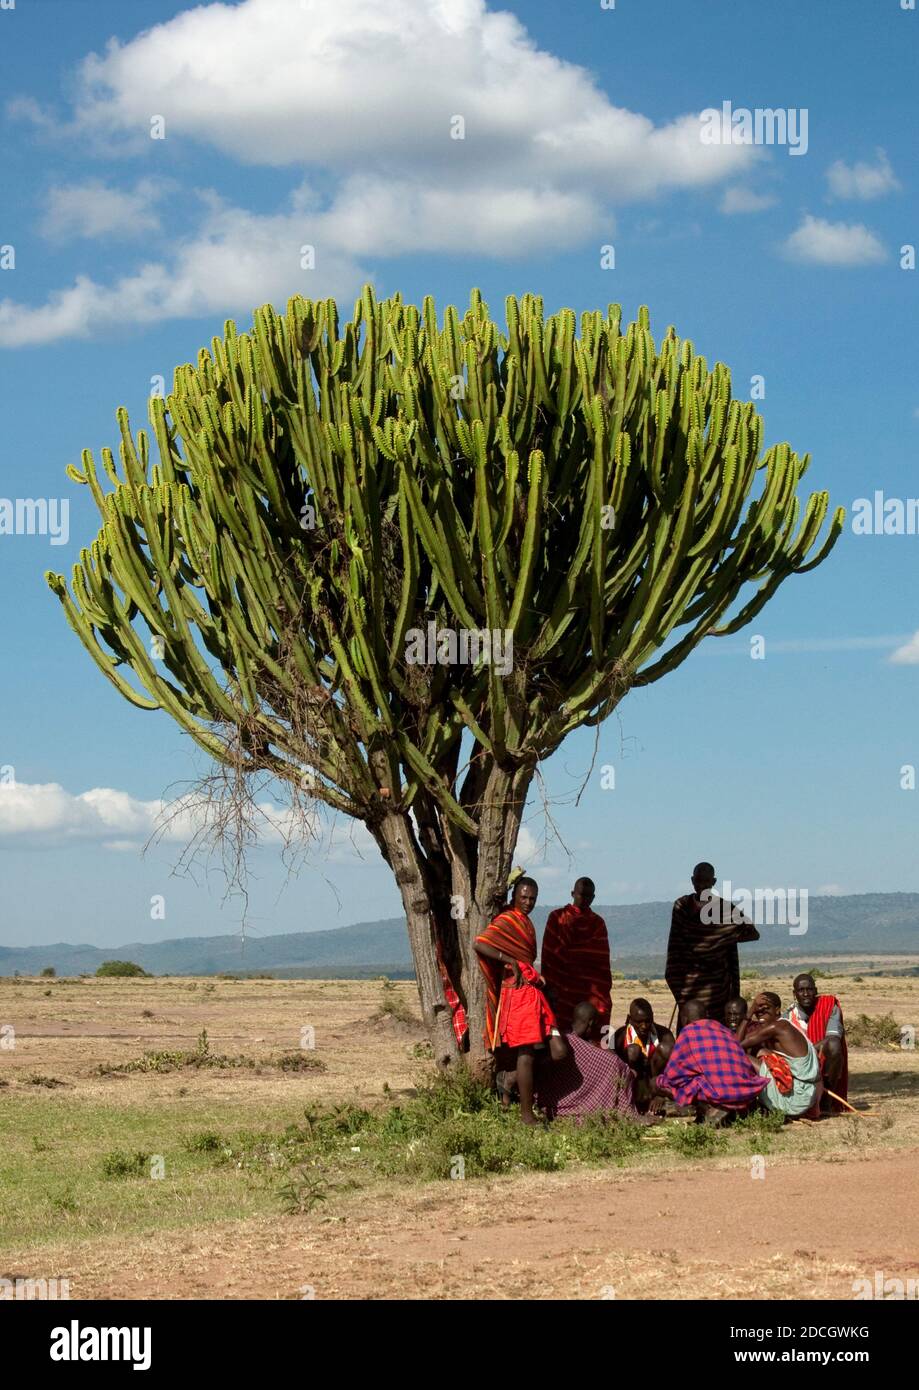 Maasai tribe men looking for shadow under a tree, Rift Valley Province, Maasai Mara, Kenya Stock Photo